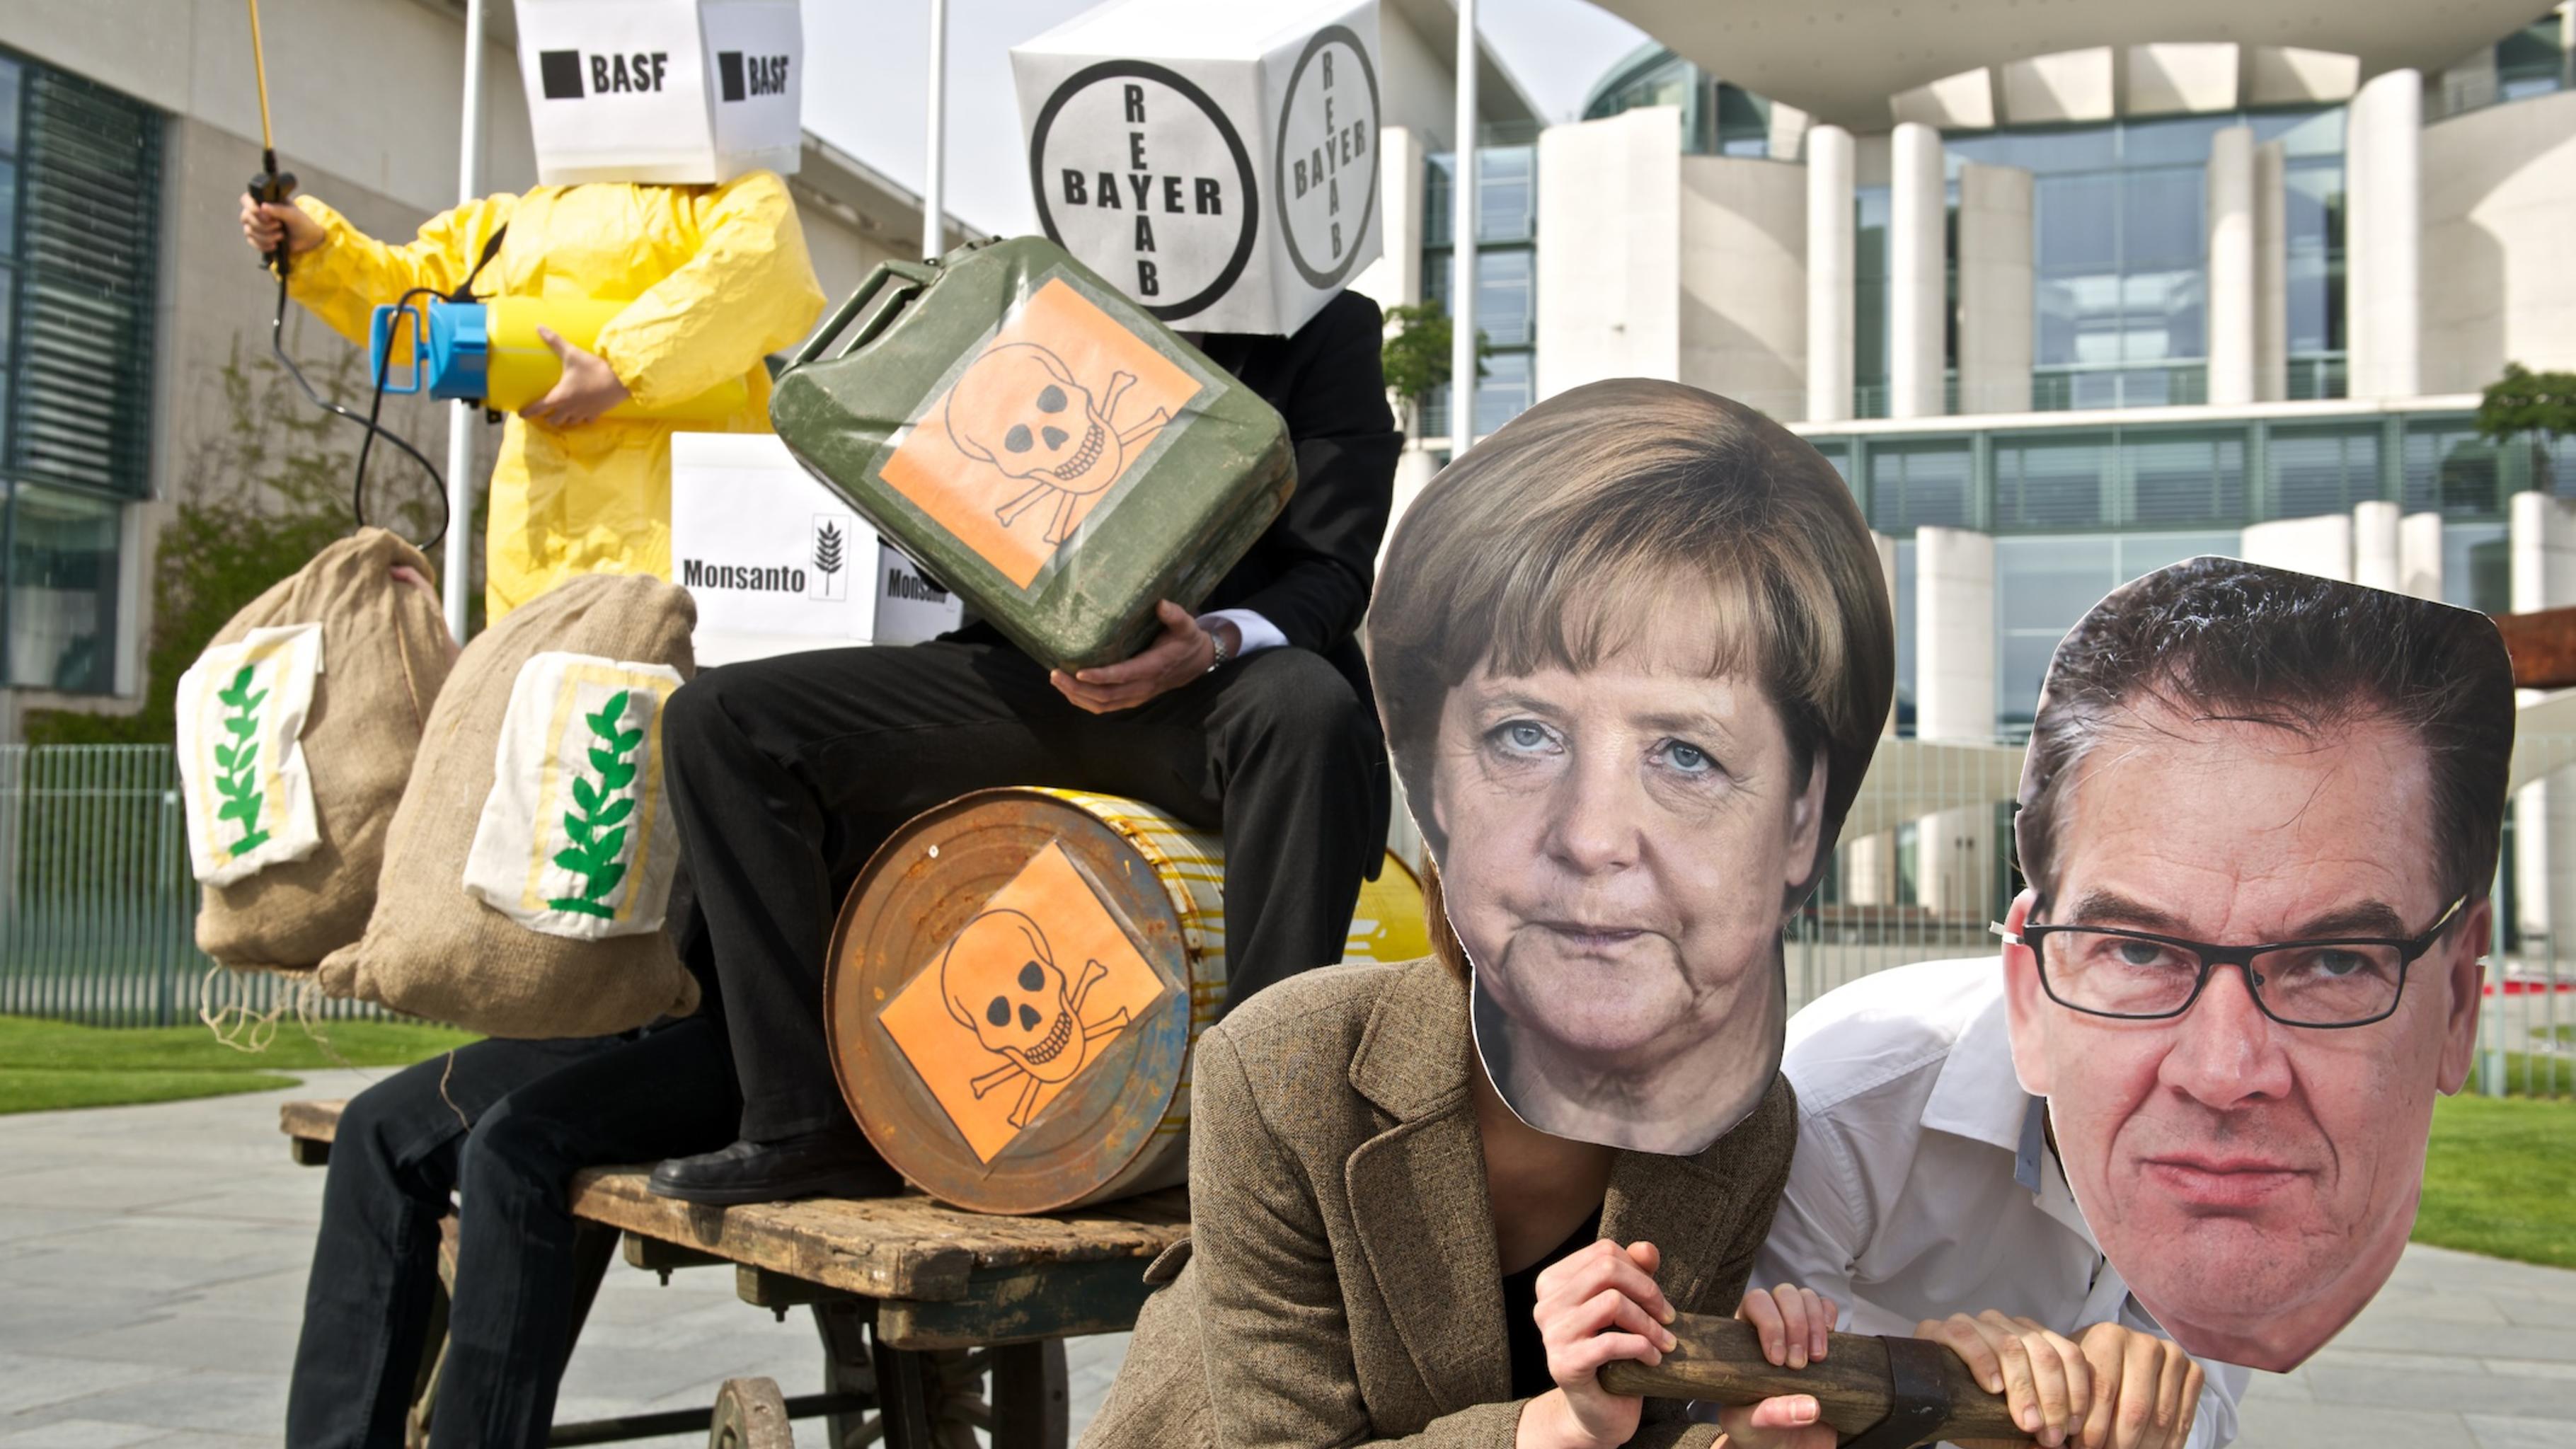 Bundeskanzlerin Angela Merkel und Entwicklungsminister Gerd Müller vor den Karren der Agrarkonzerne Bayer, BASF, Monsanto und Co. gespannt.